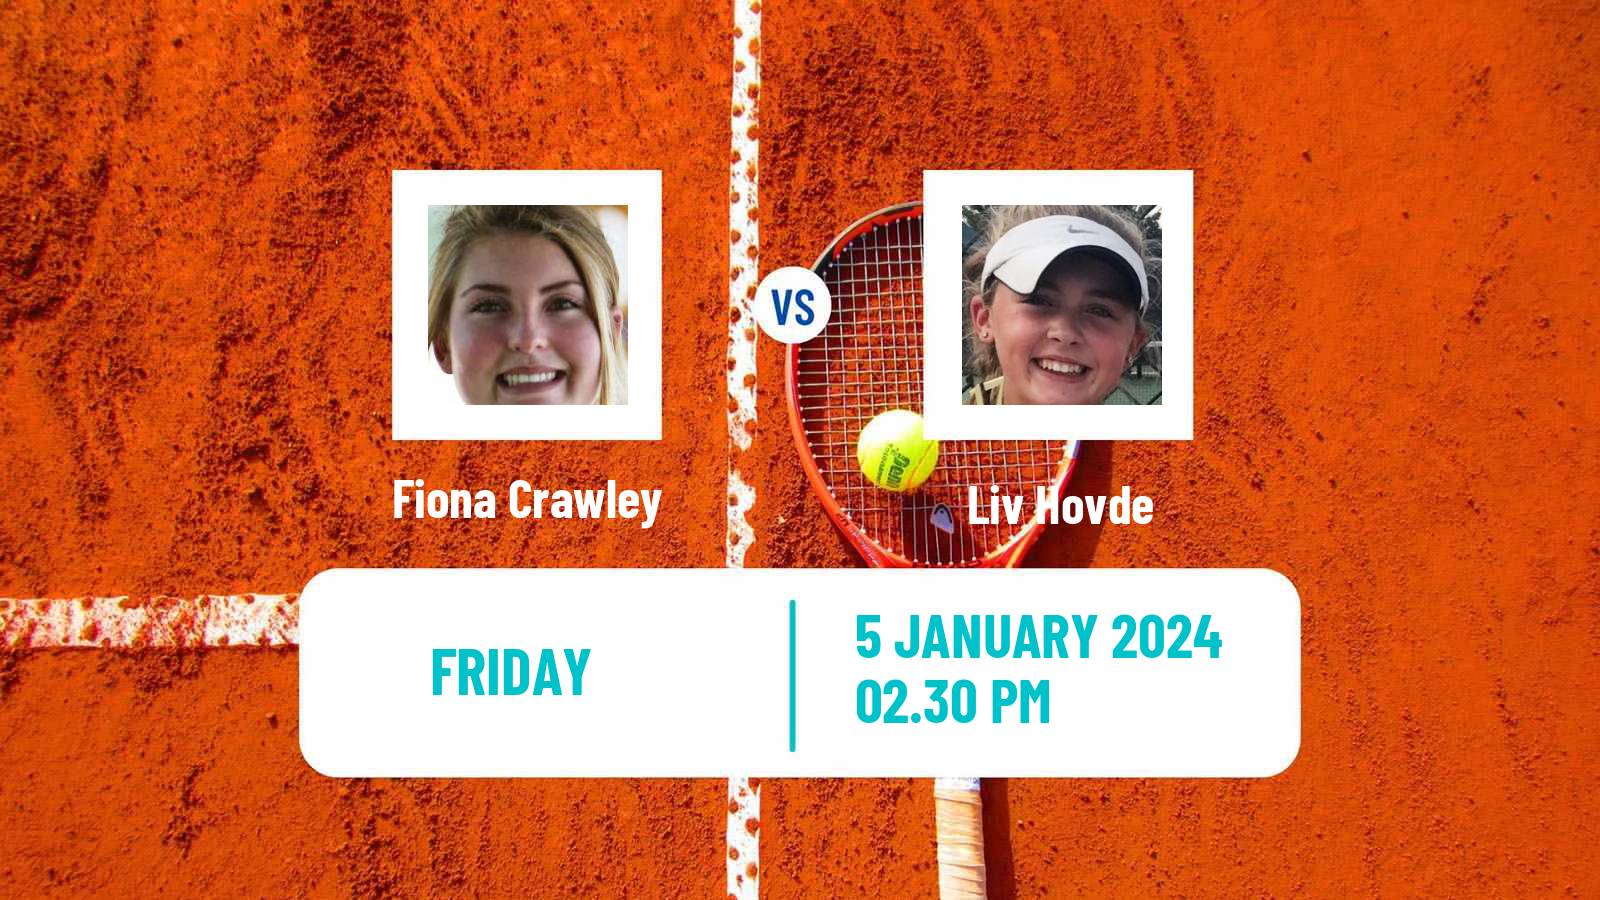 Tennis ITF W35 Arcadia Ca Women Fiona Crawley - Liv Hovde